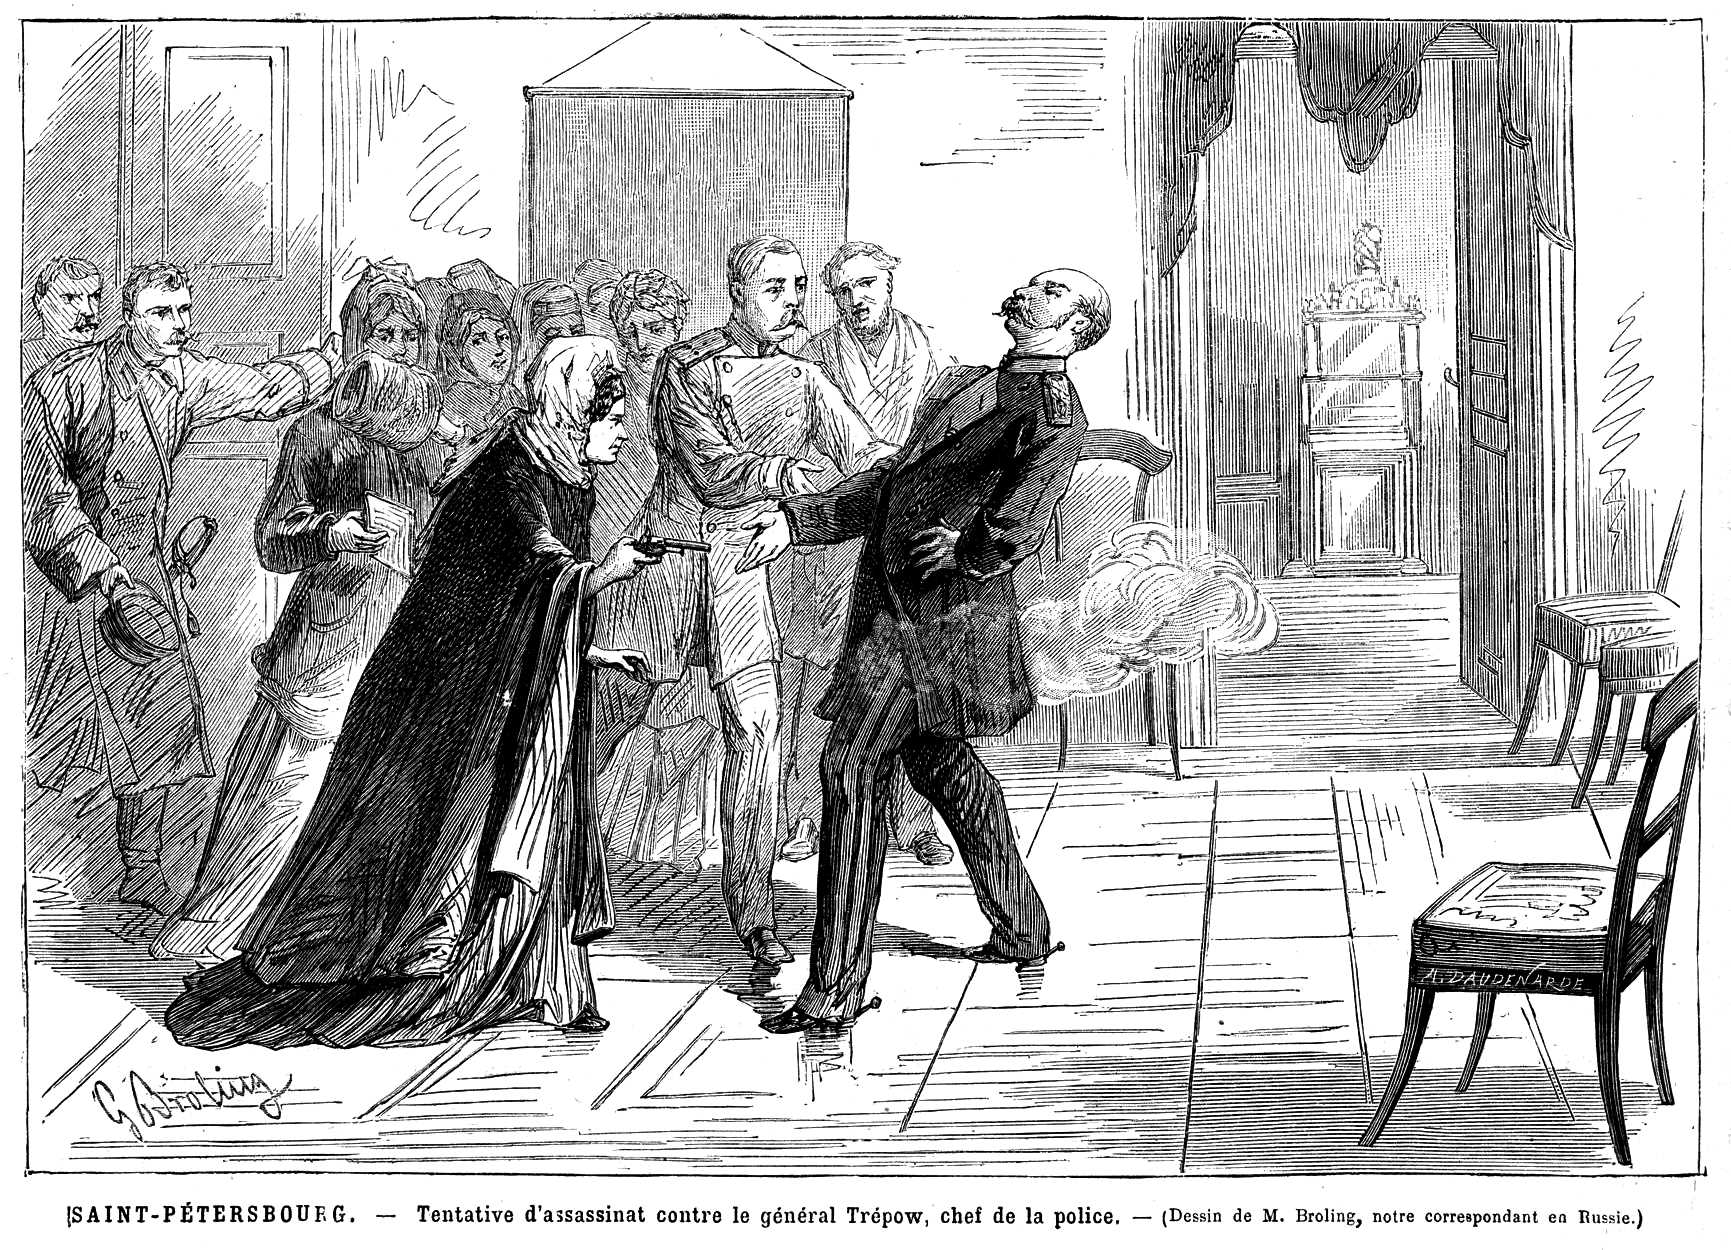 L'atemptat de Vera Zasulic segons el diari parisenc "Le Monde Illustré" del 9 de març de 1878